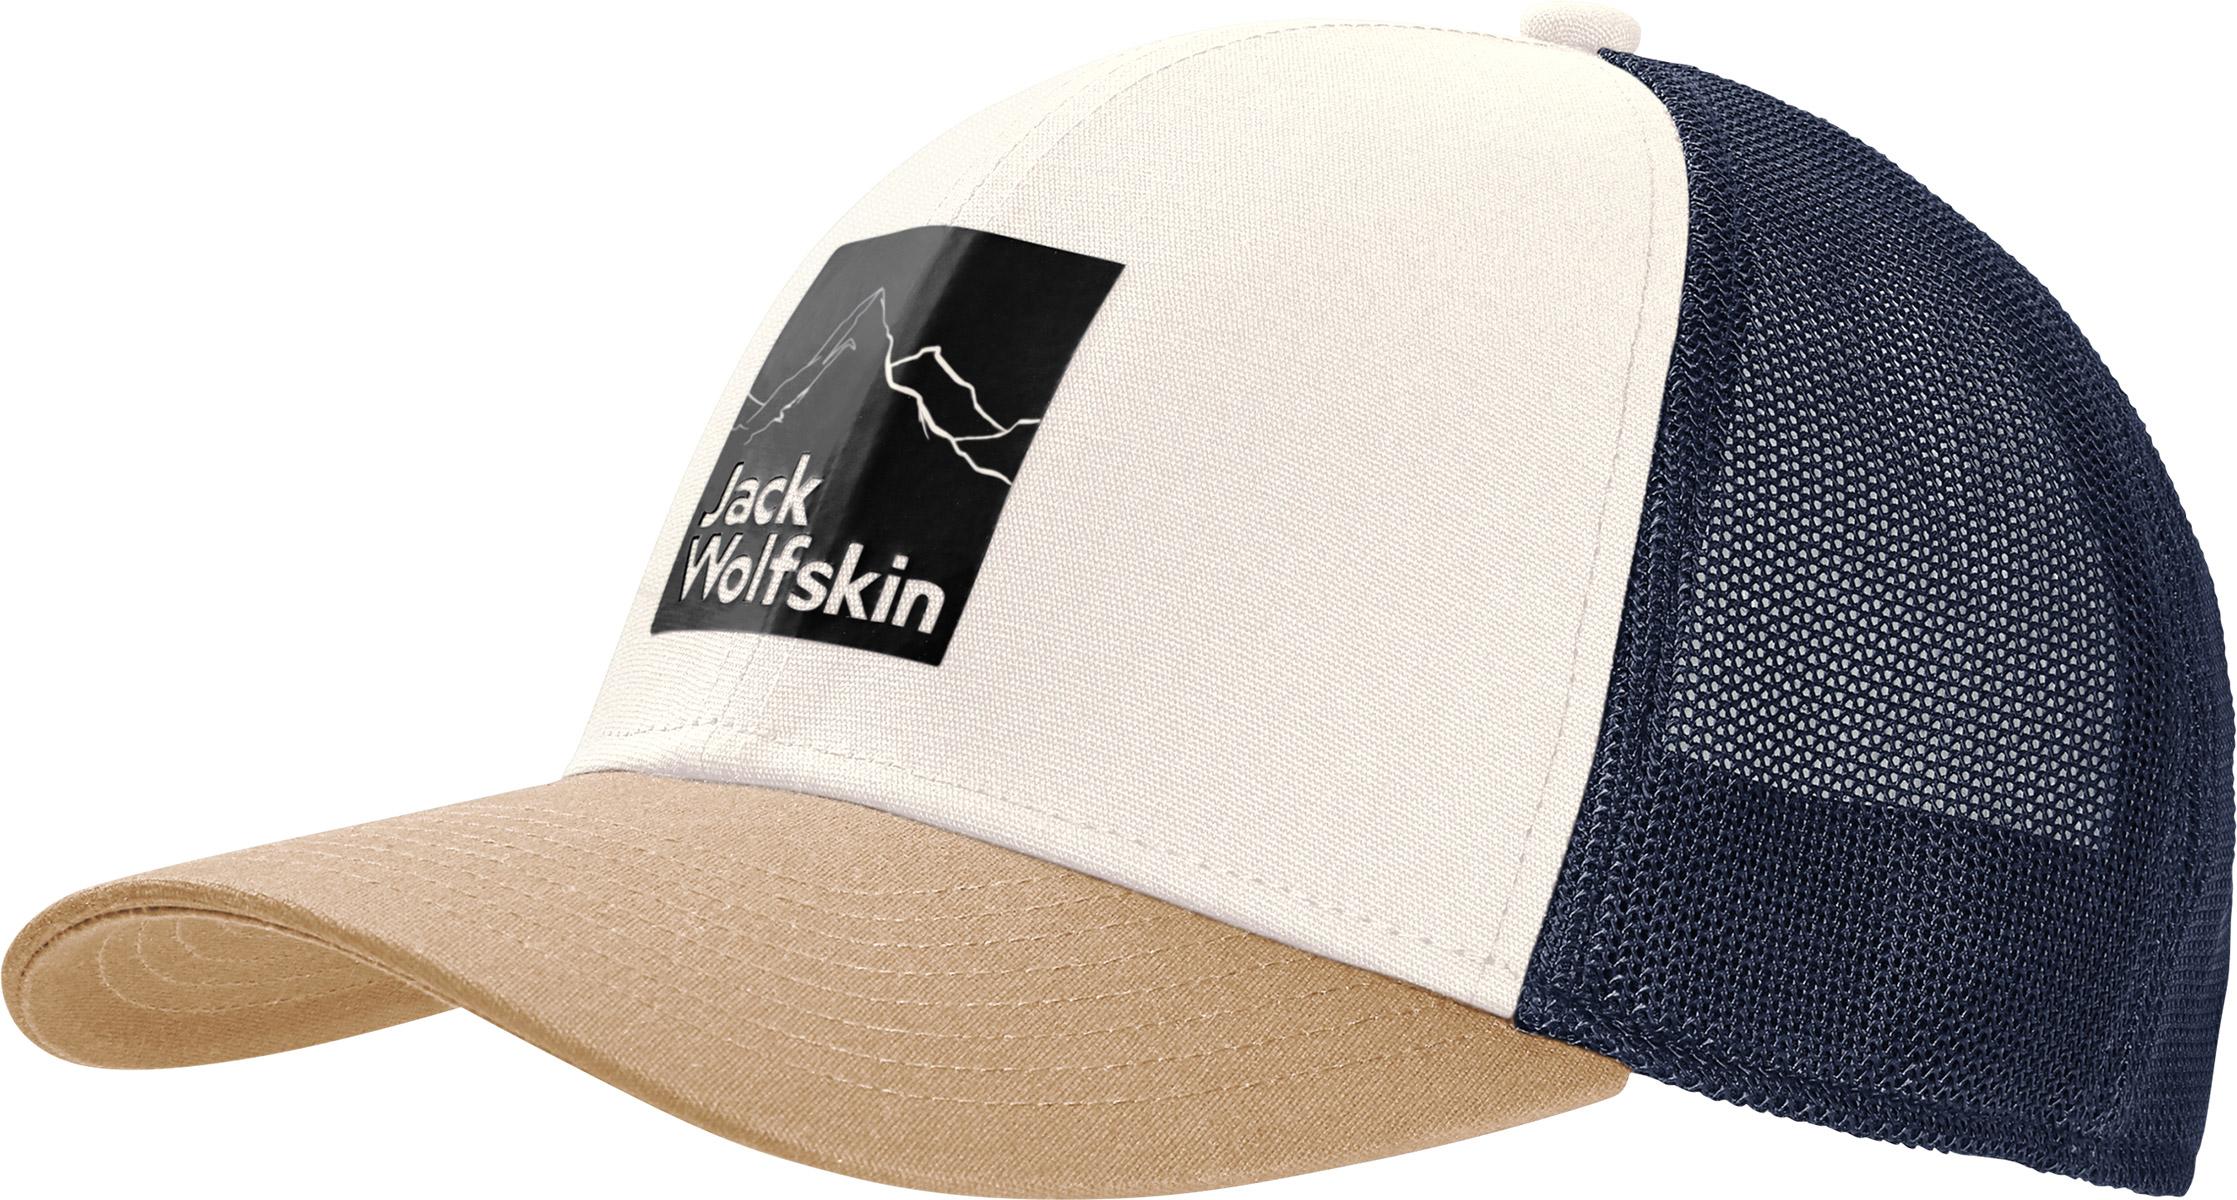 Jack Wolfskin Brand Cap - Egret